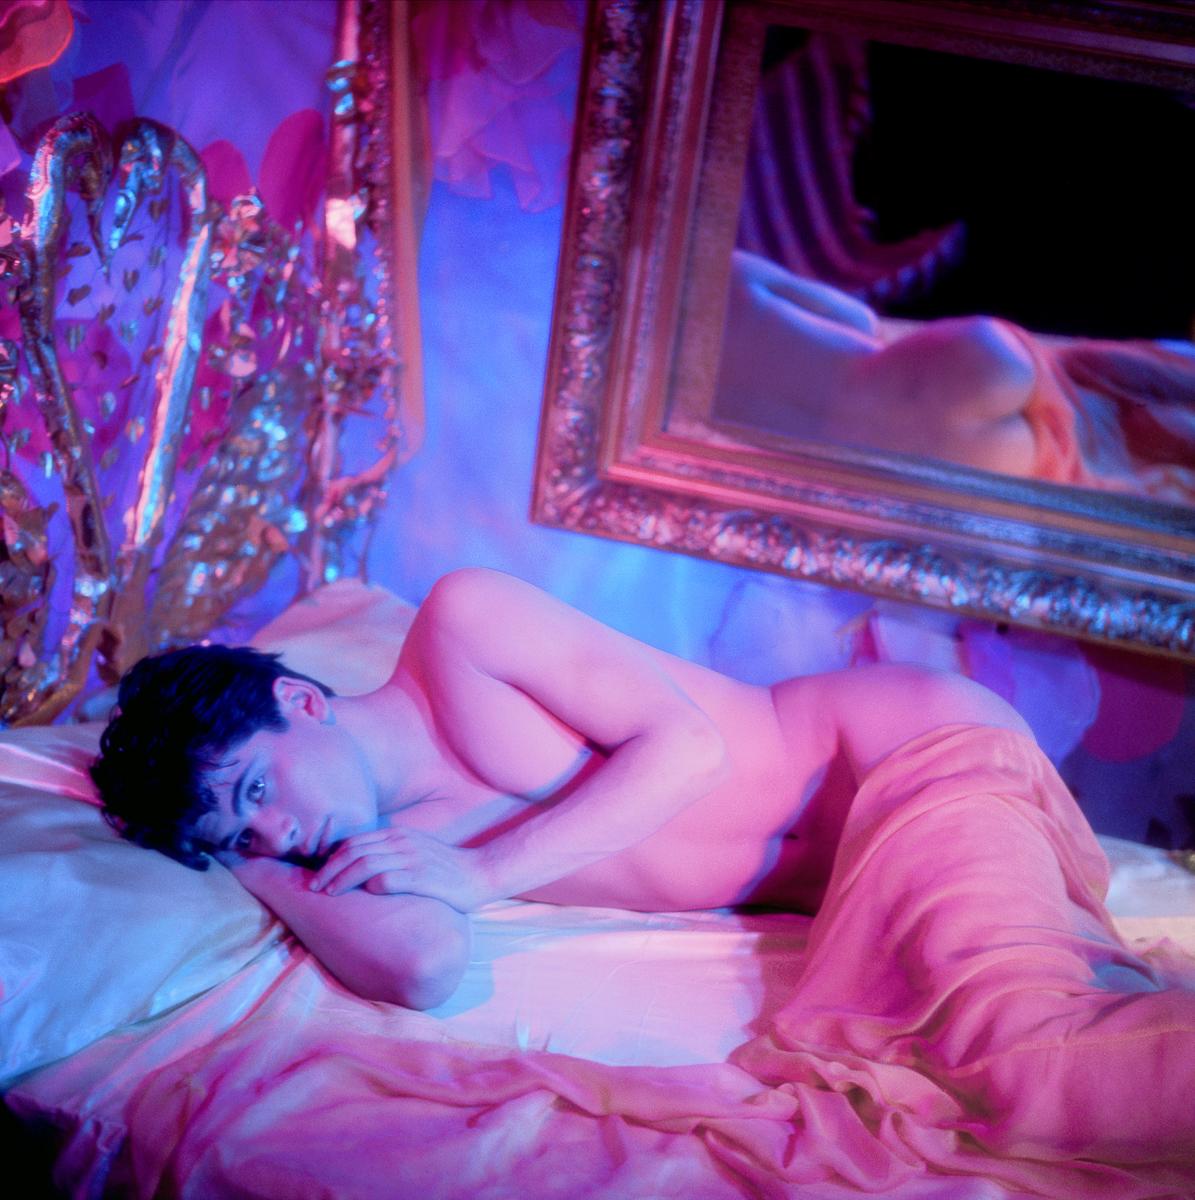 James Bidgood Nude Photograph – Bobby liegt im Bett